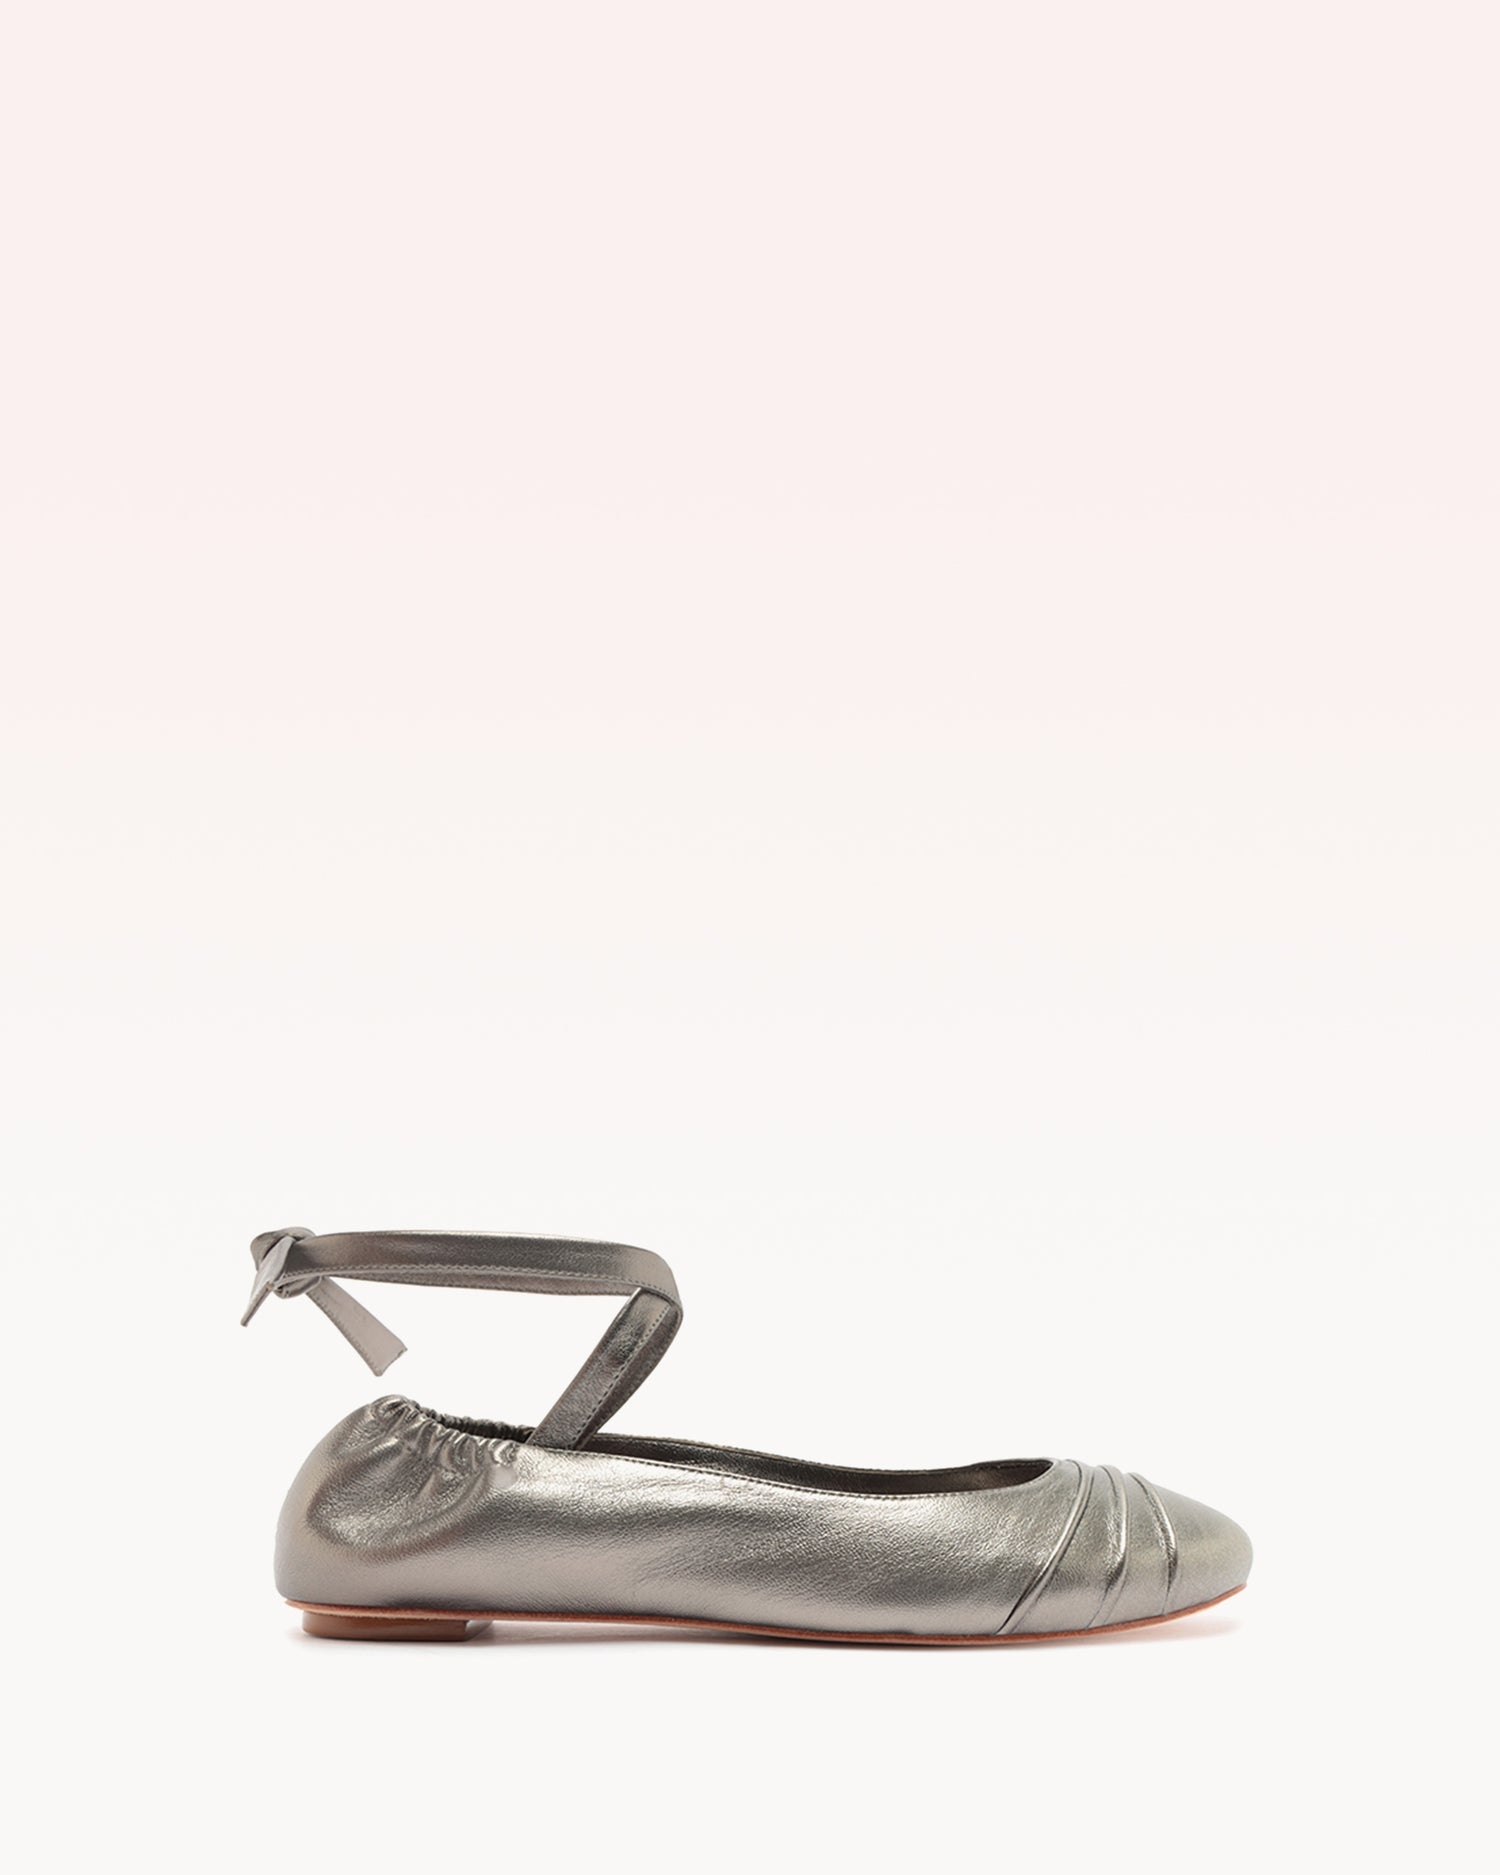 Clarita Ballet Flat Metallic Pewter Sandals R/24 35 Pewter Metallic Leather